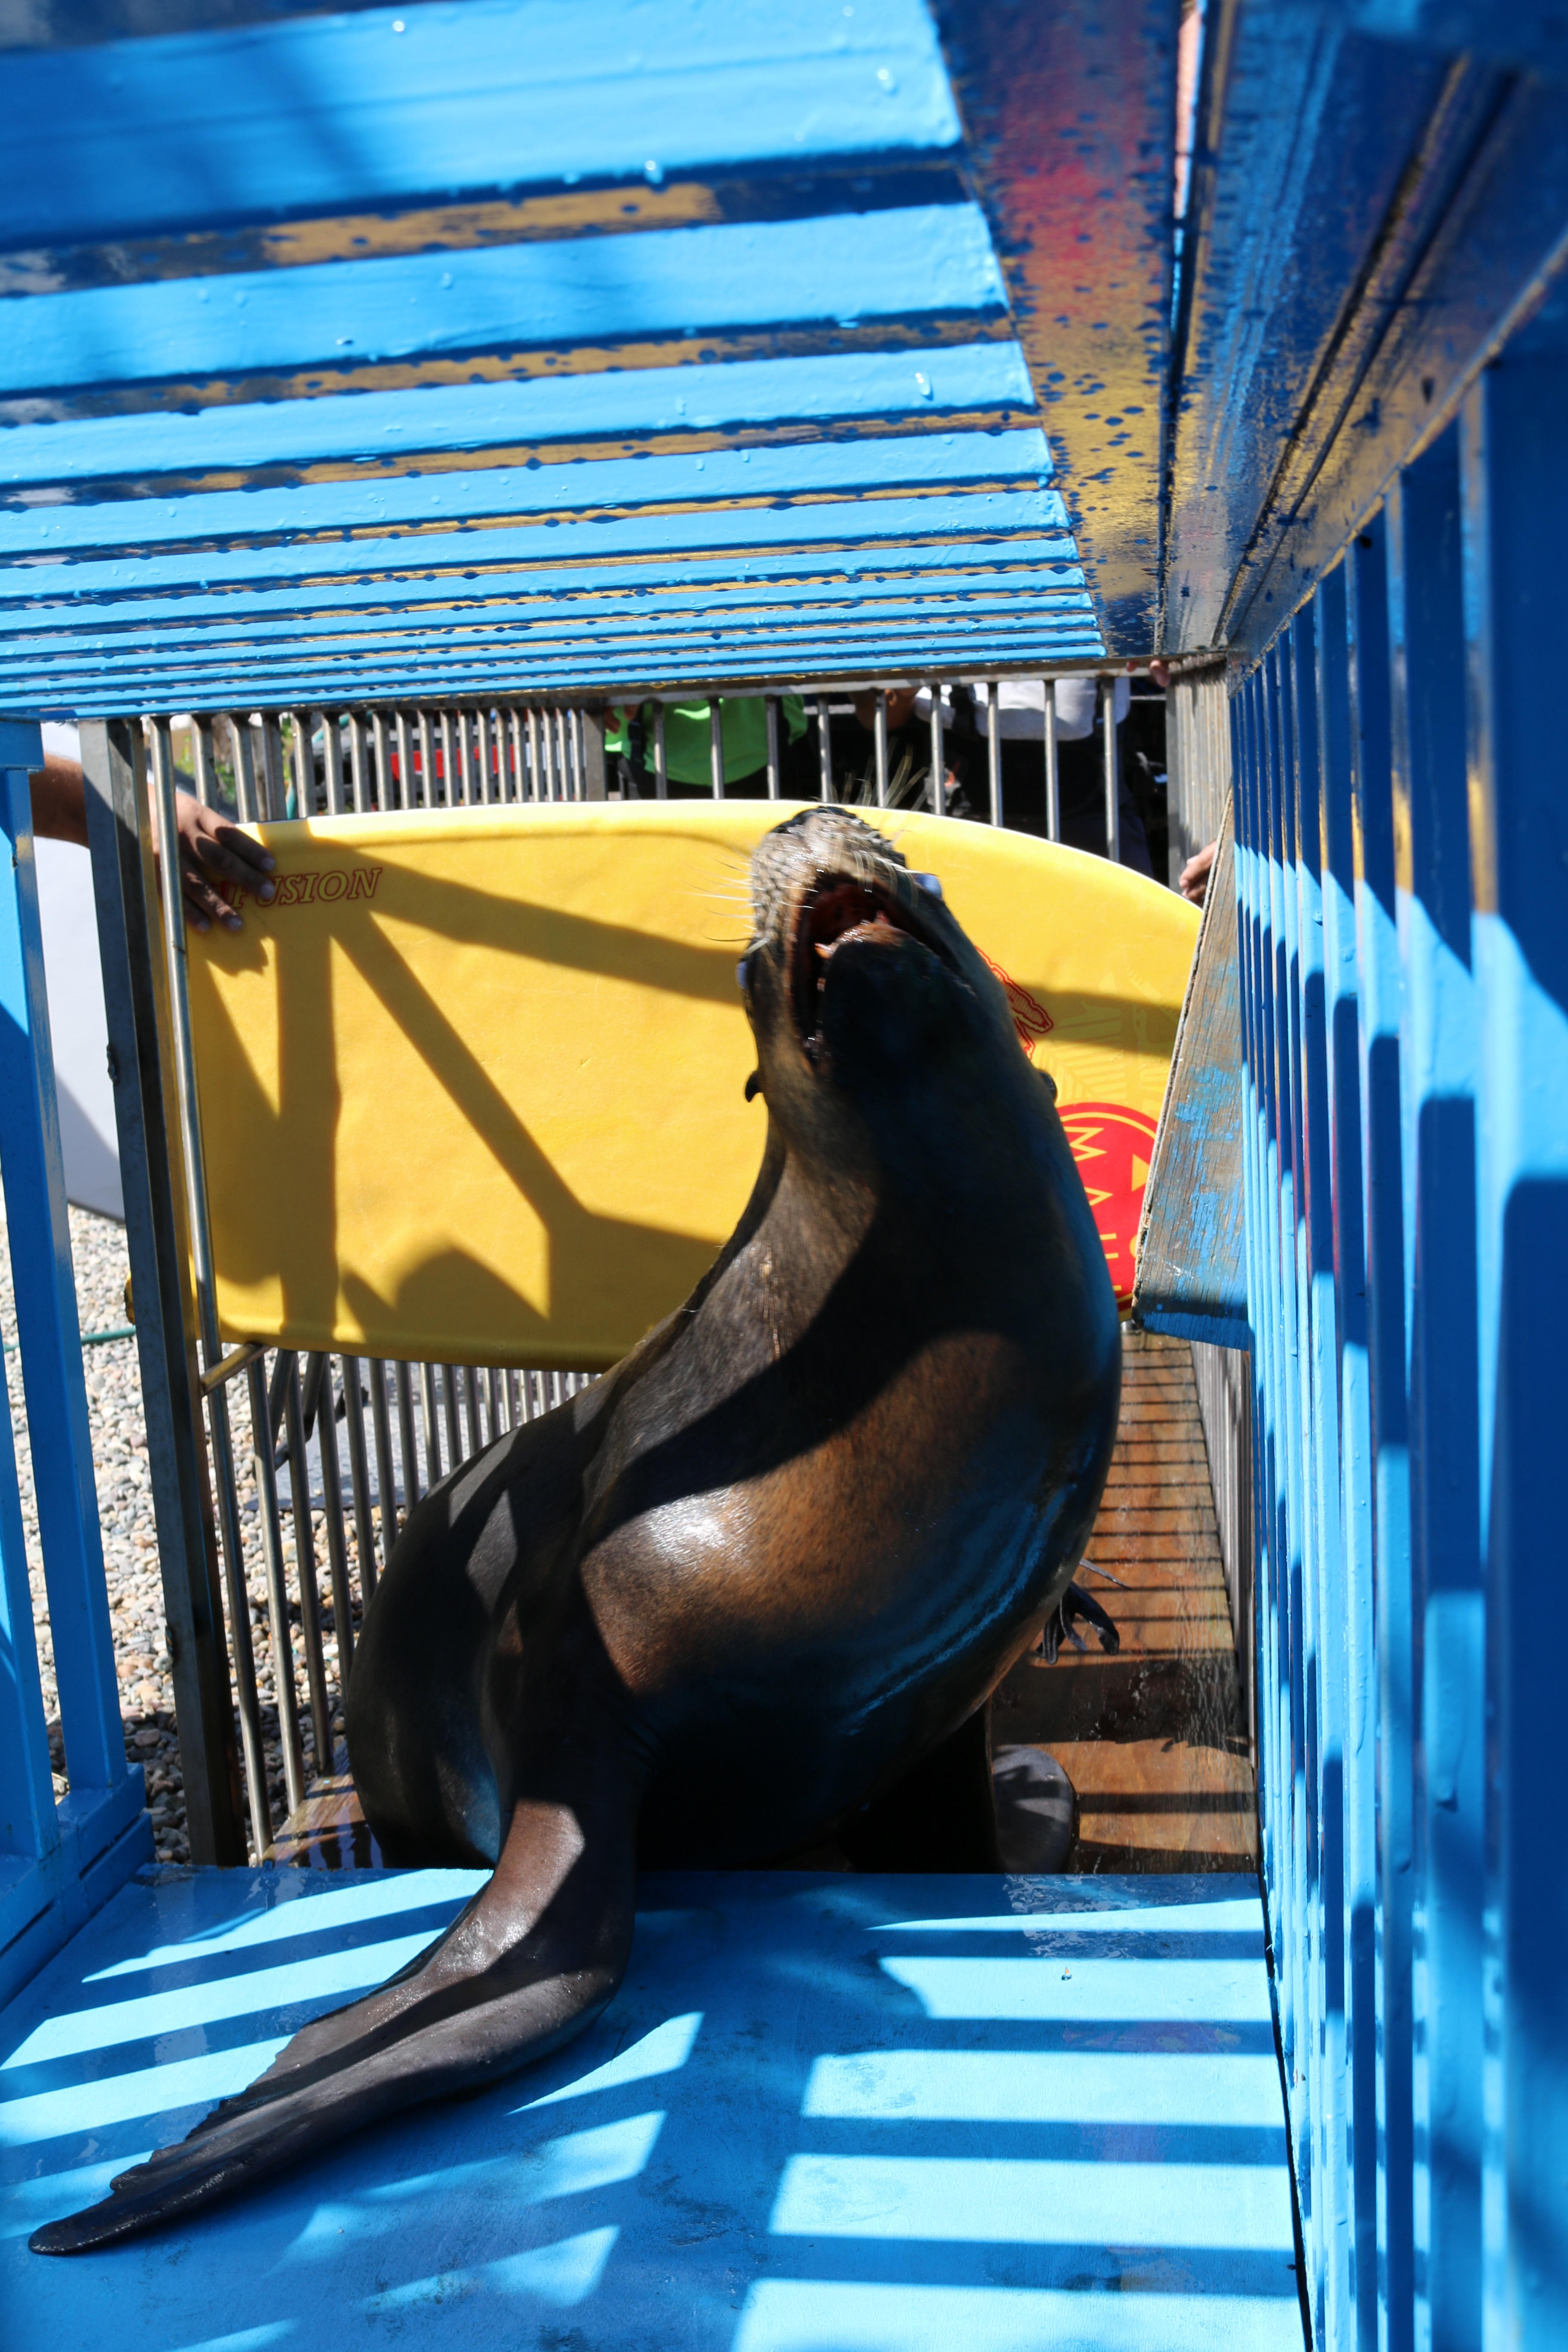 La Procuraduría Federal de Protección al Ambiente (PROFEPA) y la Secretaría de Marina – Armada de México (SEMAR) realizaron el traslado de 3 ejemplares hembra de Lobo marino de Sudamérica (Otaria flavescens) al delfinario “Dolphin Discovery Vallarta”, en Nuevo Vallarta, Nayarit, los cuales se encontraban alojados en el Parque Acuático Atlantis de la Ciudad de México.